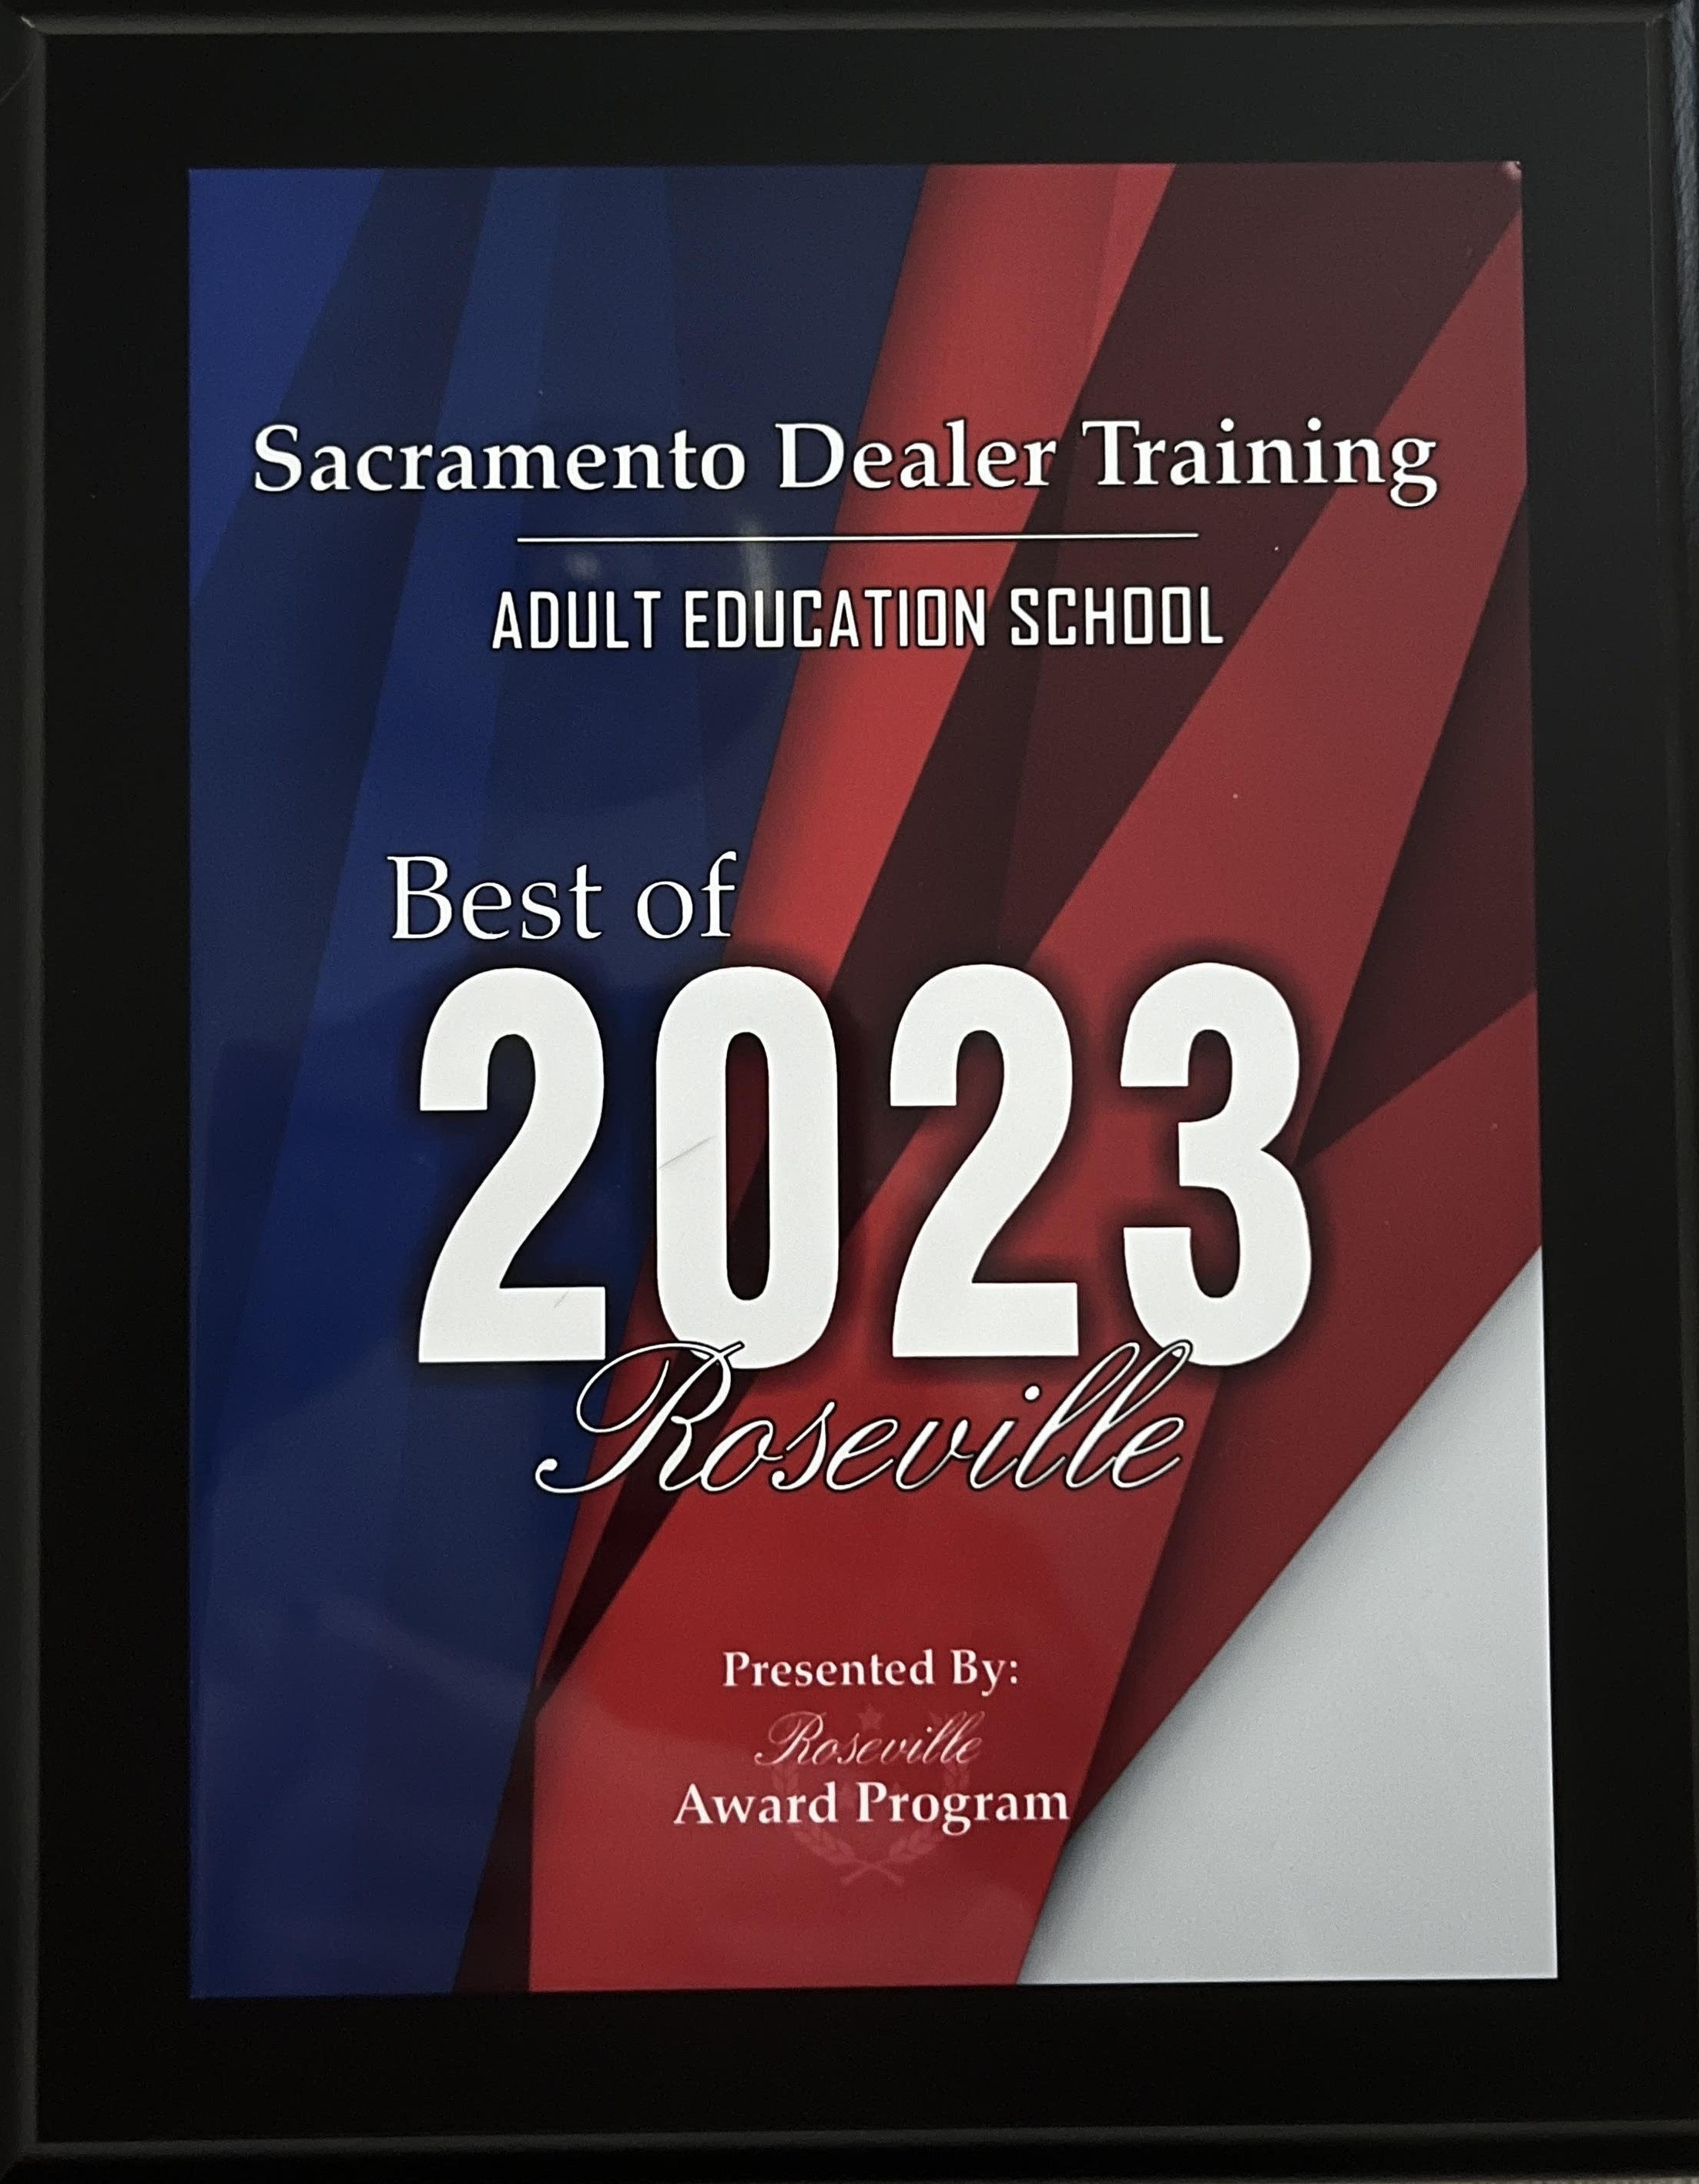 Sacramento Dealer Training Best of 2023 Roseville